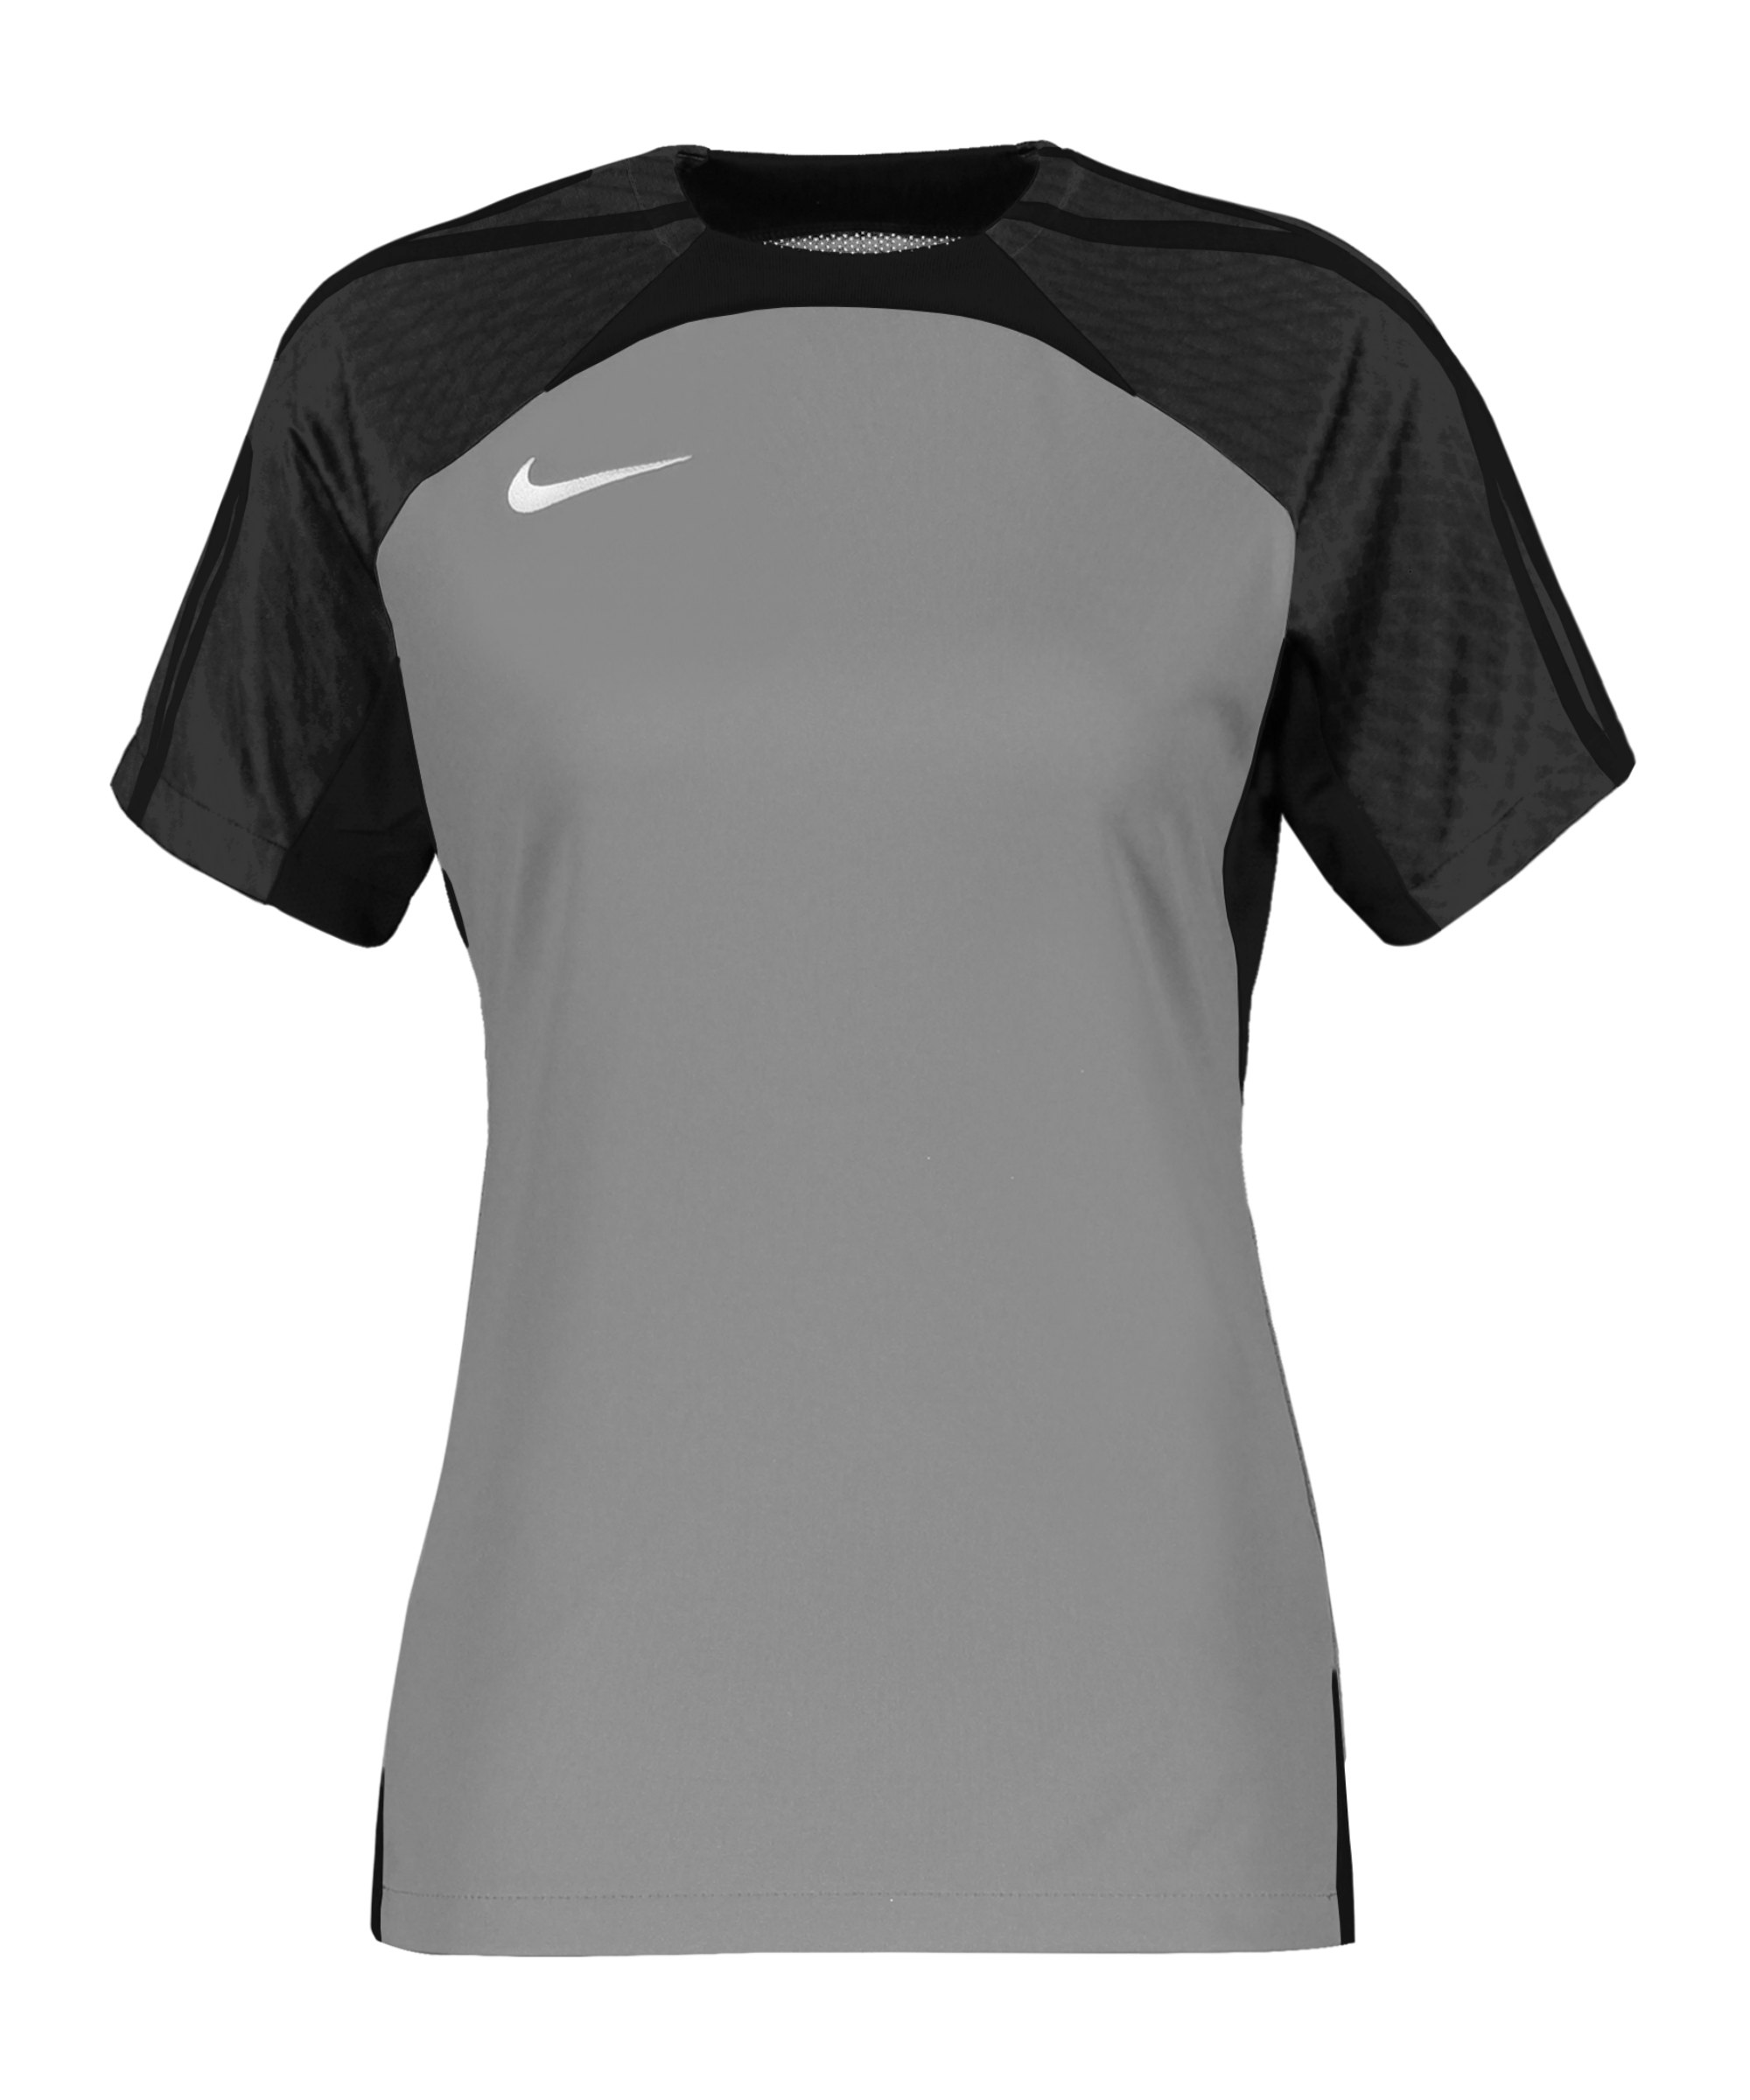 Nike Strike III Trikot Damen Grau F052 - grau